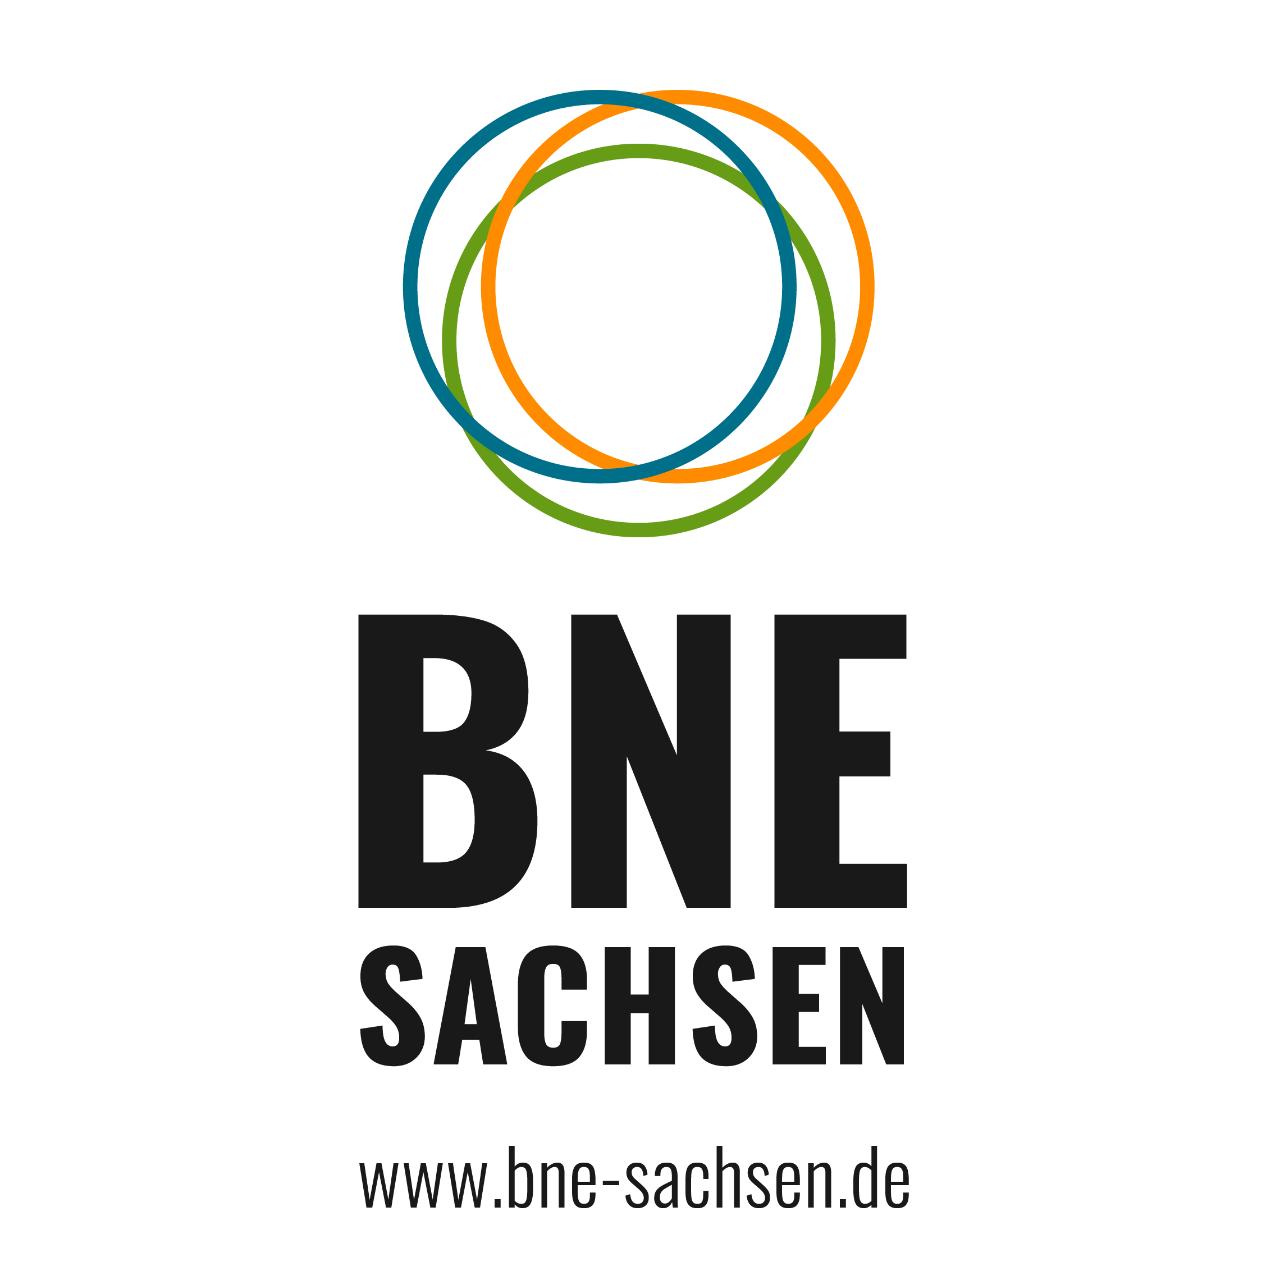 Veranstaltungen und Online-Beteiligung zur Fortschreibung der sächsischen Landesstrategie BNE